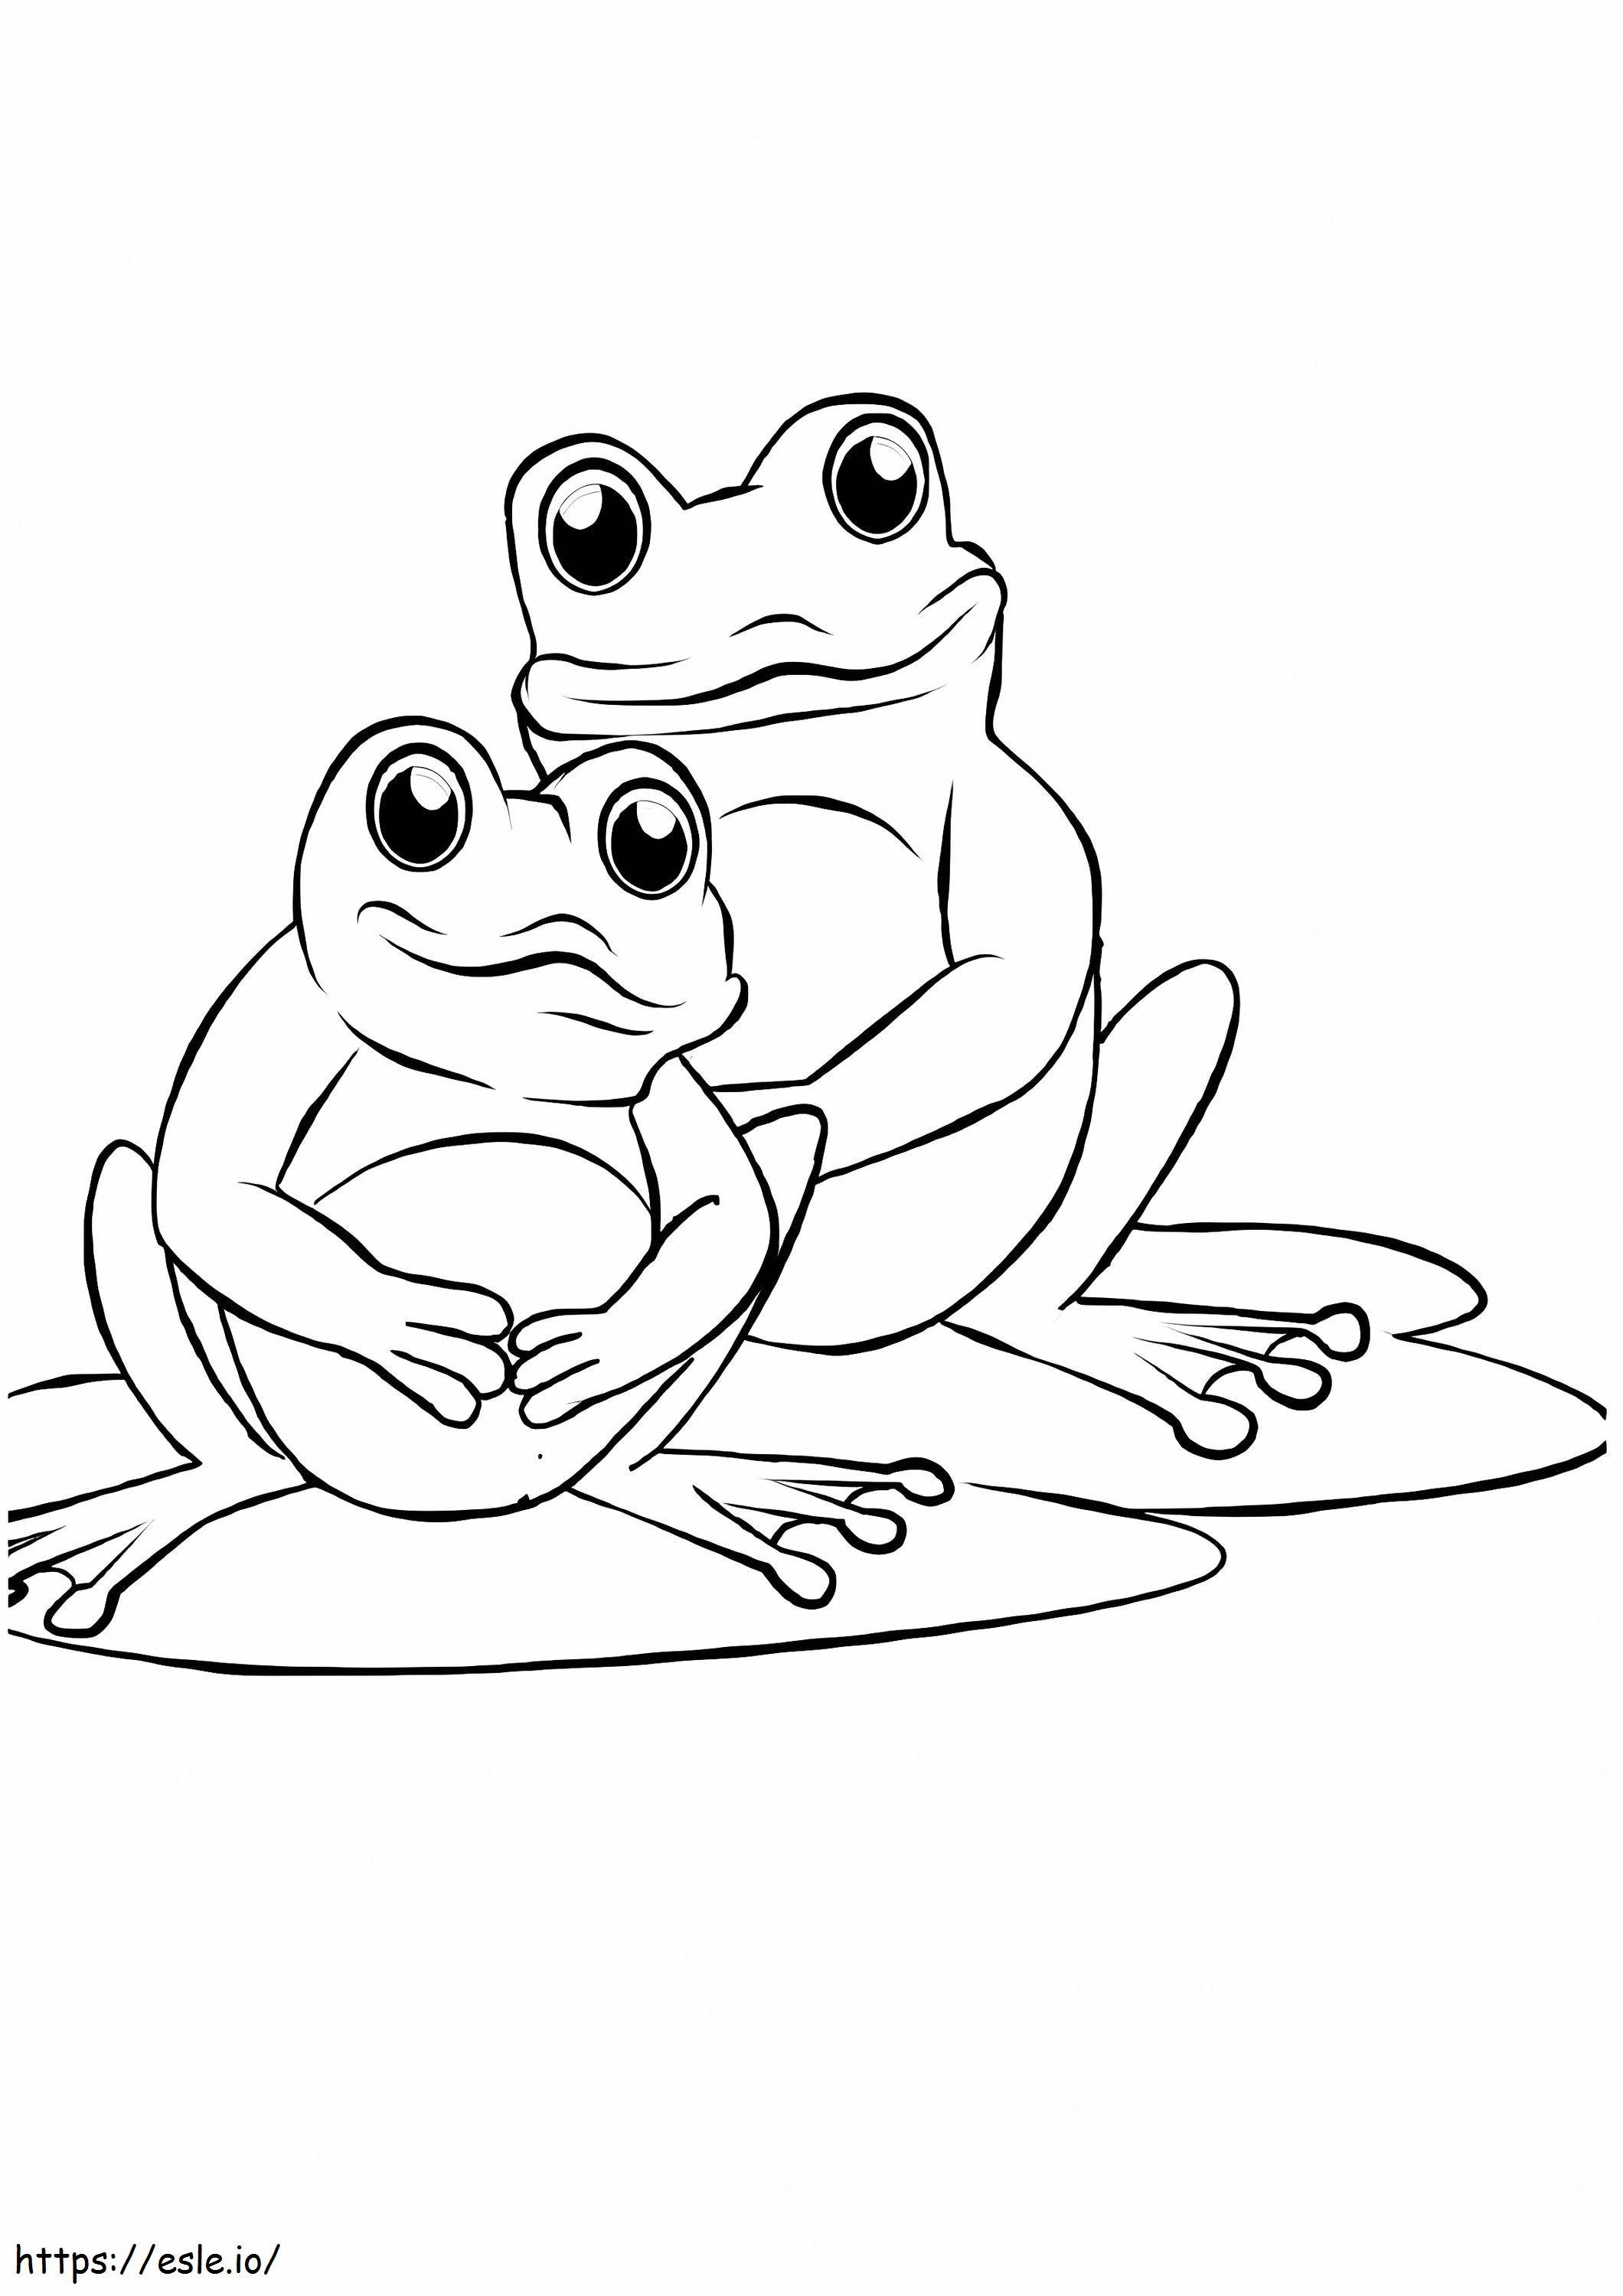 Coloriage 1526218720 Maman et bébé grenouille A4 à imprimer dessin